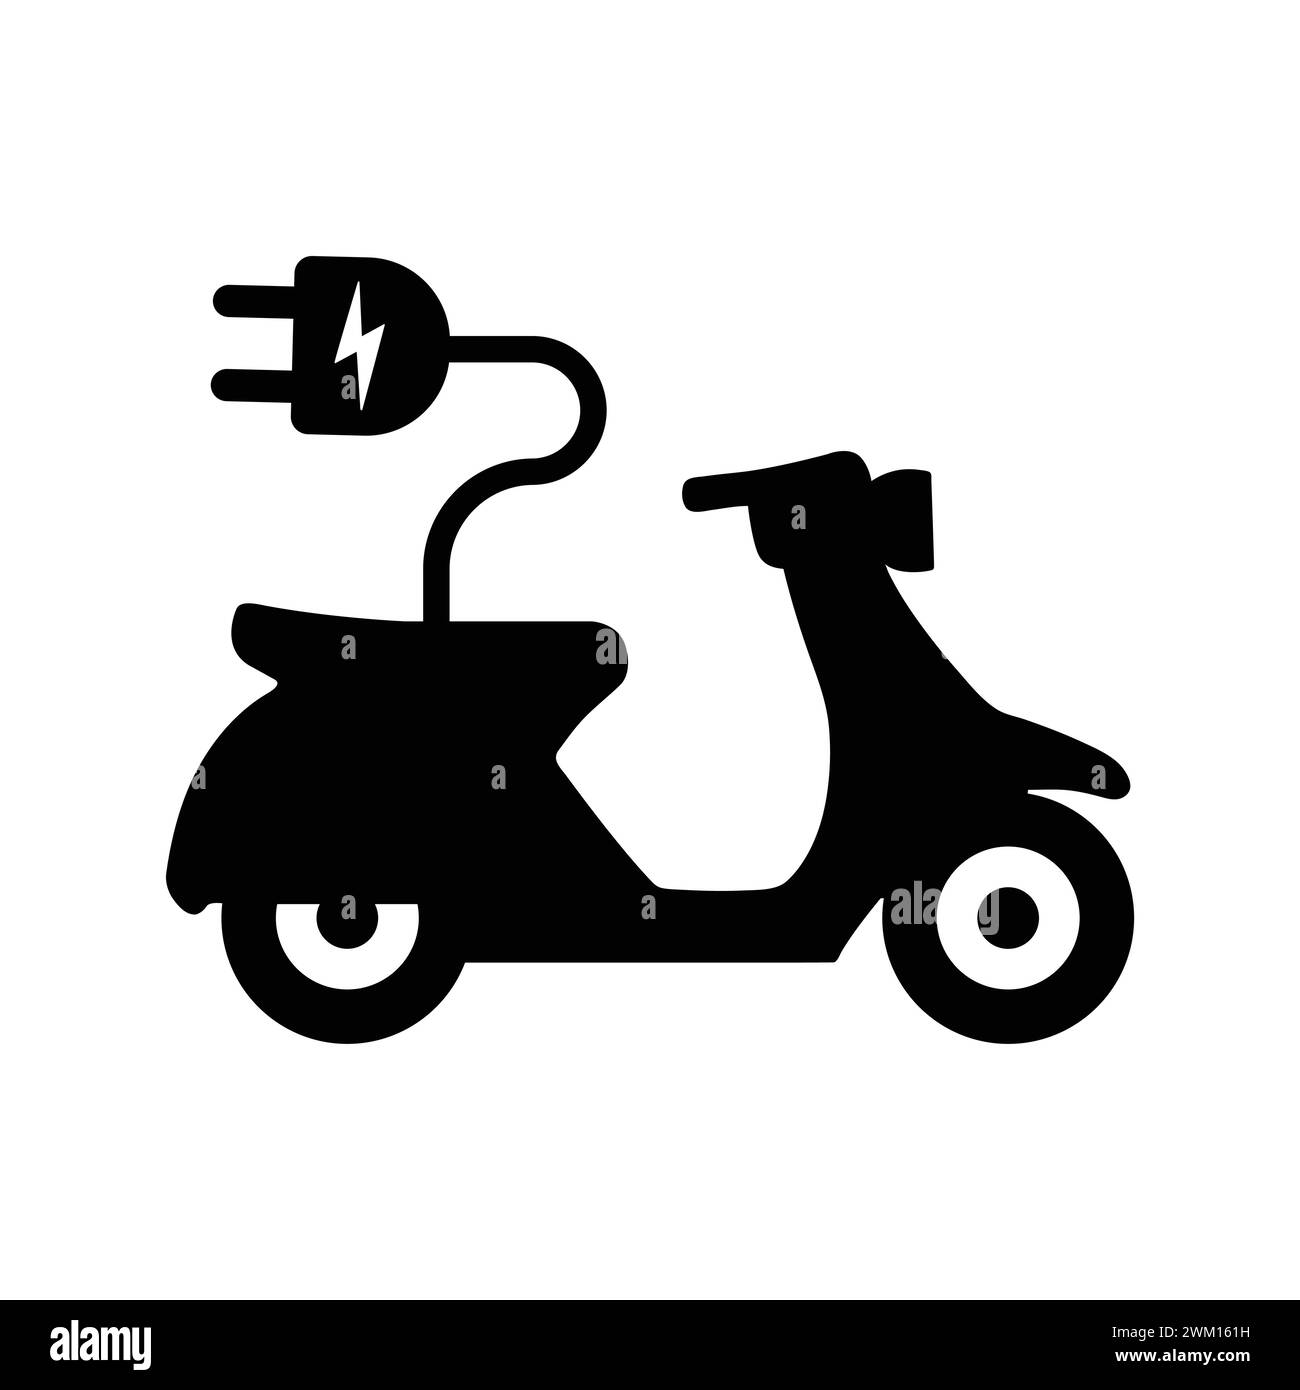 Symbol Für Elektroroller. Elektromotorrad Mit Stecker. Motorrad-Piktogramm Vektor-Illustration. Moped Oder Motorrad Silhouette Umweltfreundlicher Transport Stock Vektor